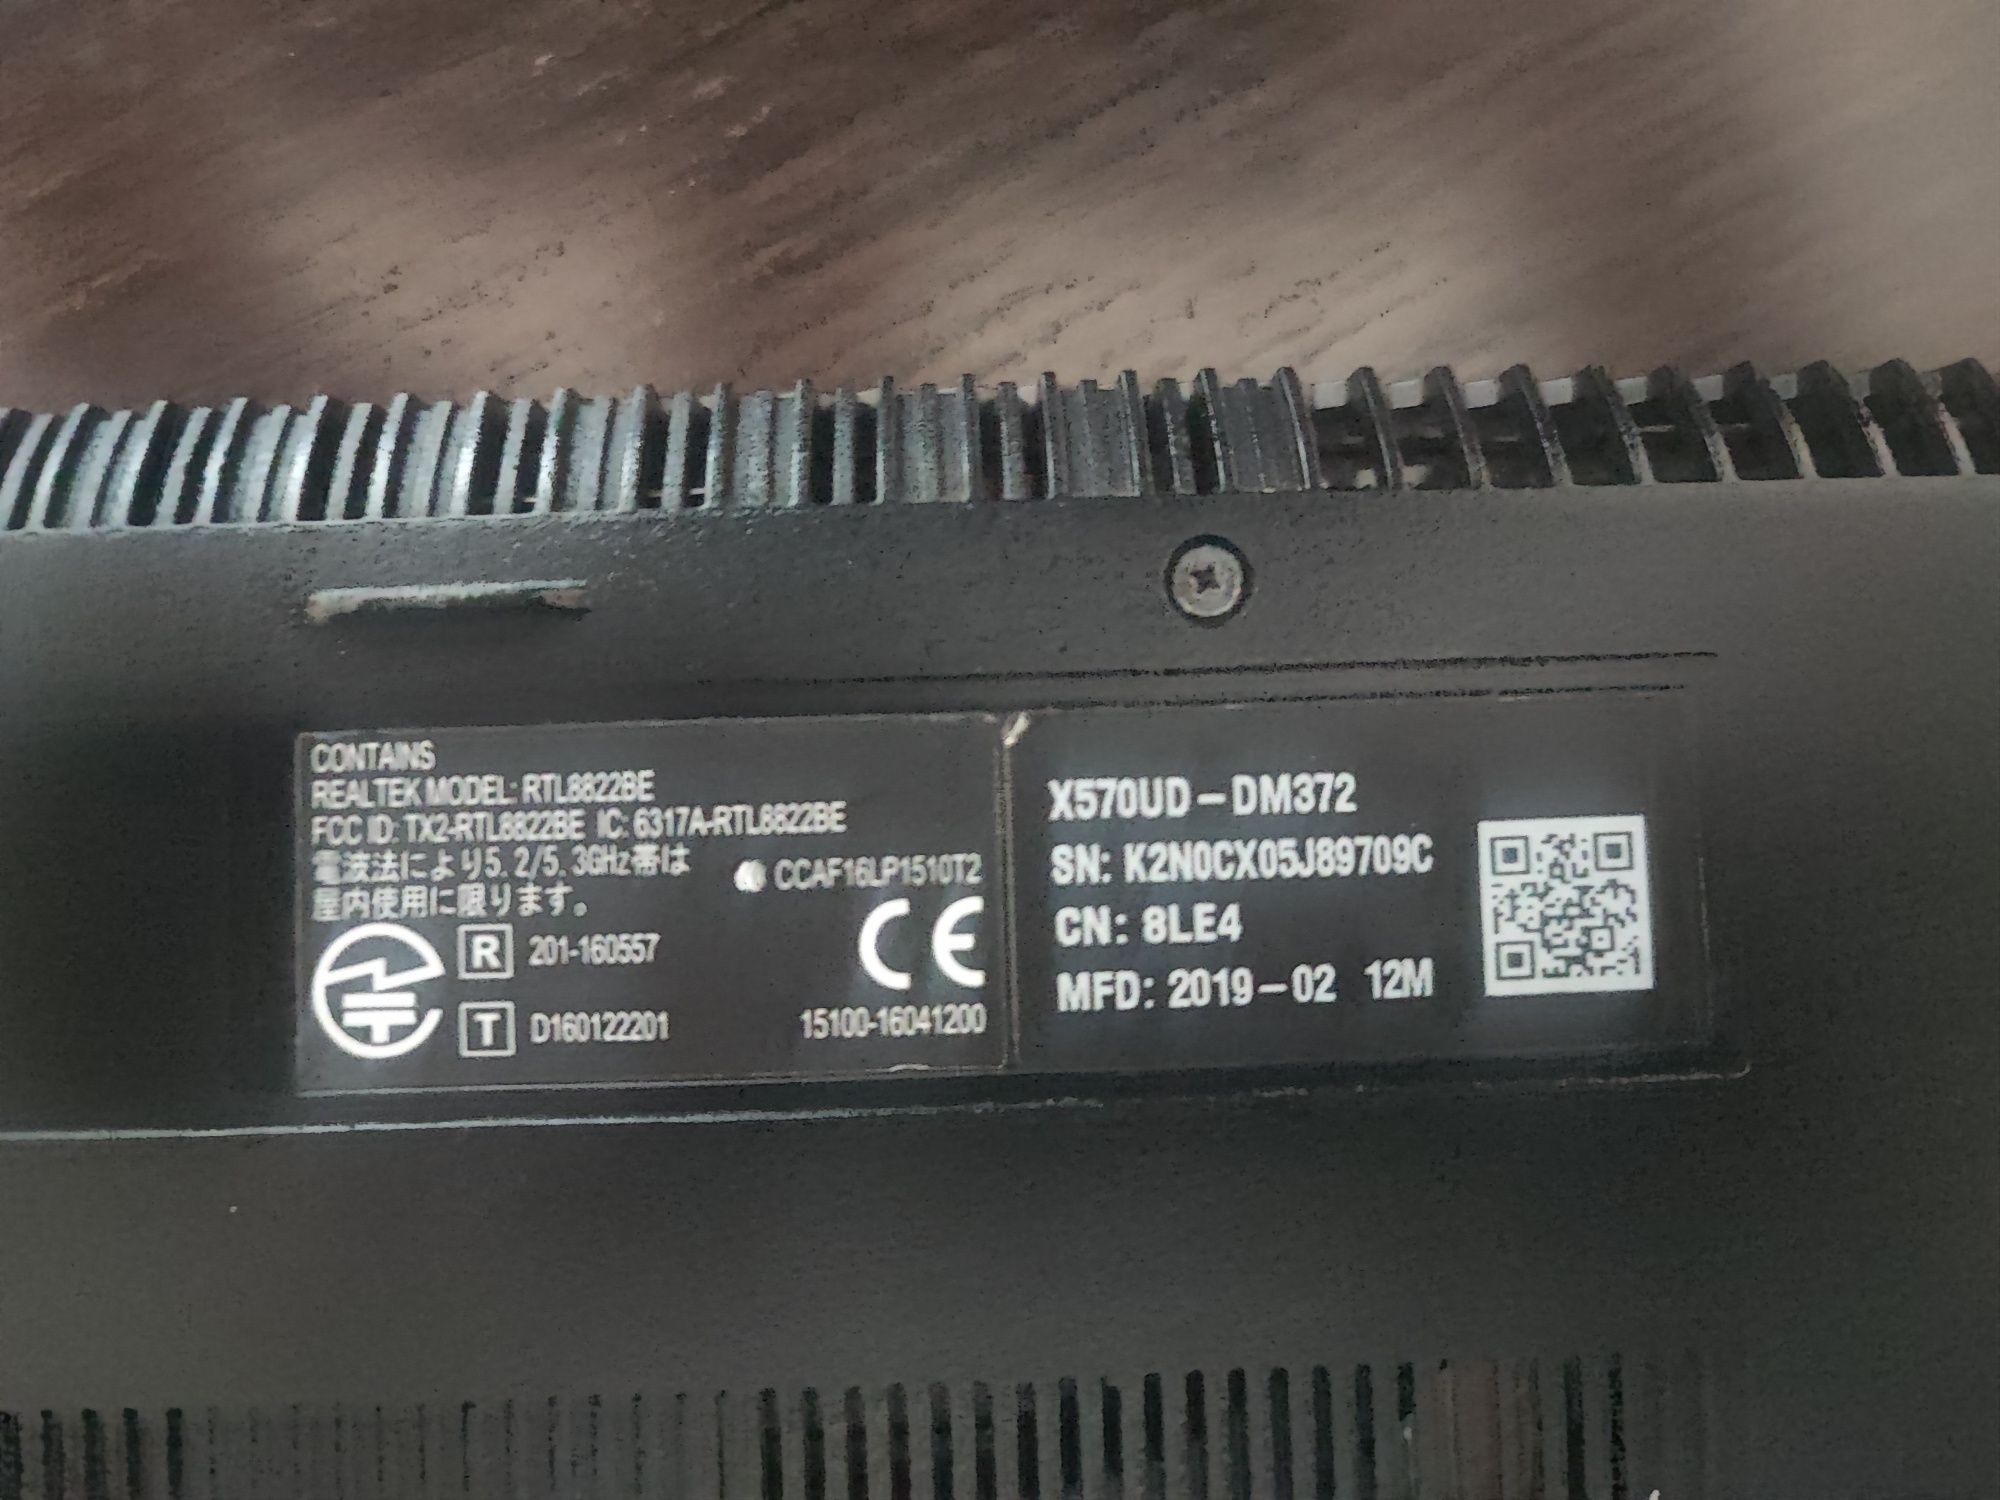 Asus X570UD-DM372.   i5-8250U.   NVIDIA GeForce GTX 1050